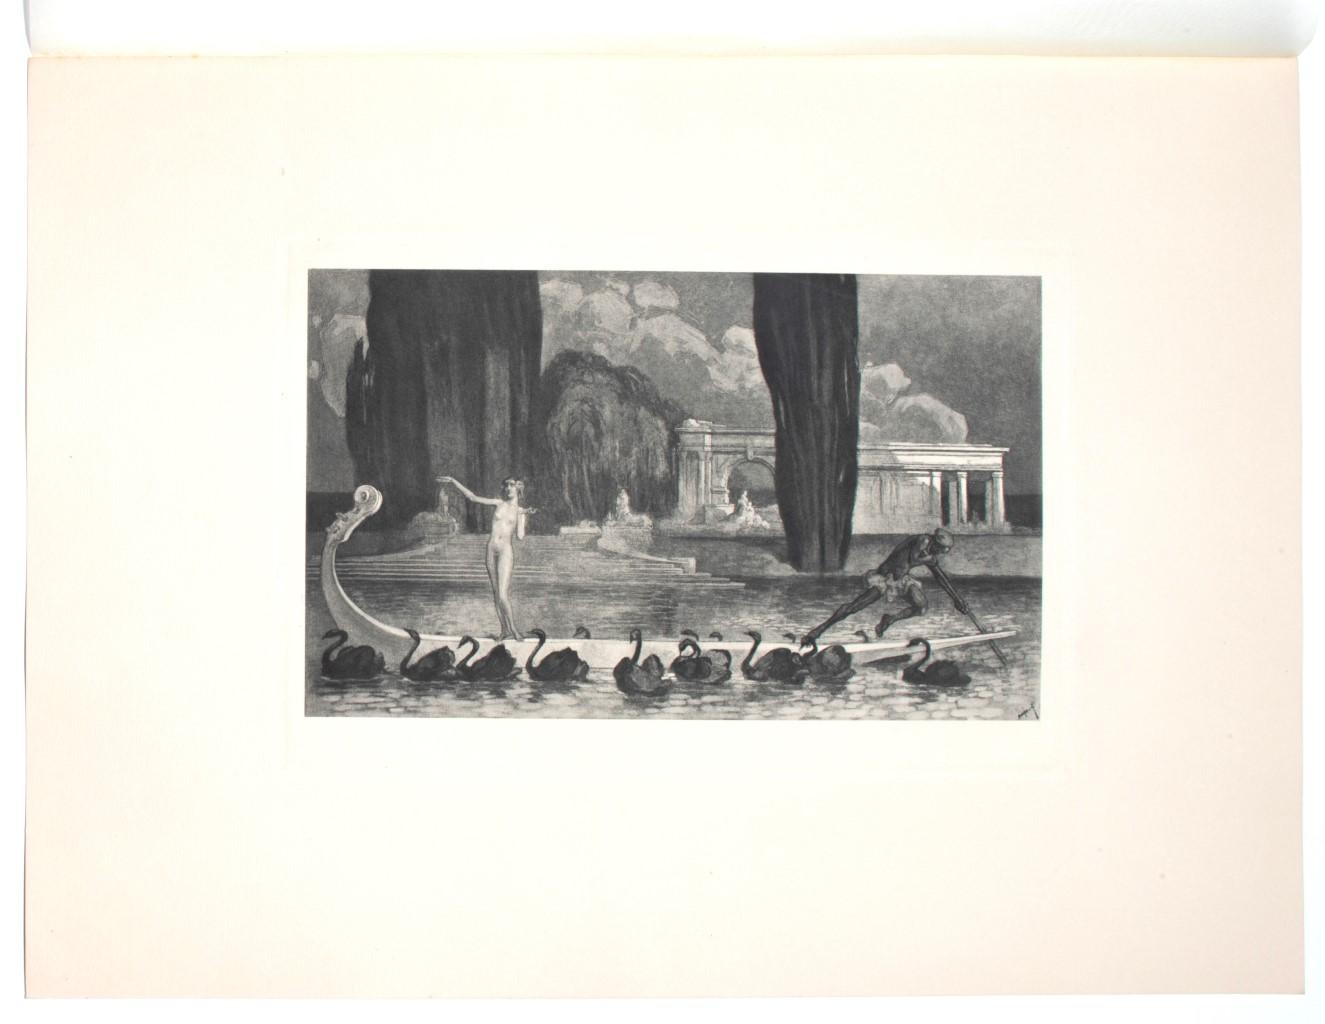 Harmonie - Héliogravure by Franz von Bayros - 1920s - Print by Franz von Bayros (Choisi Le Conin)